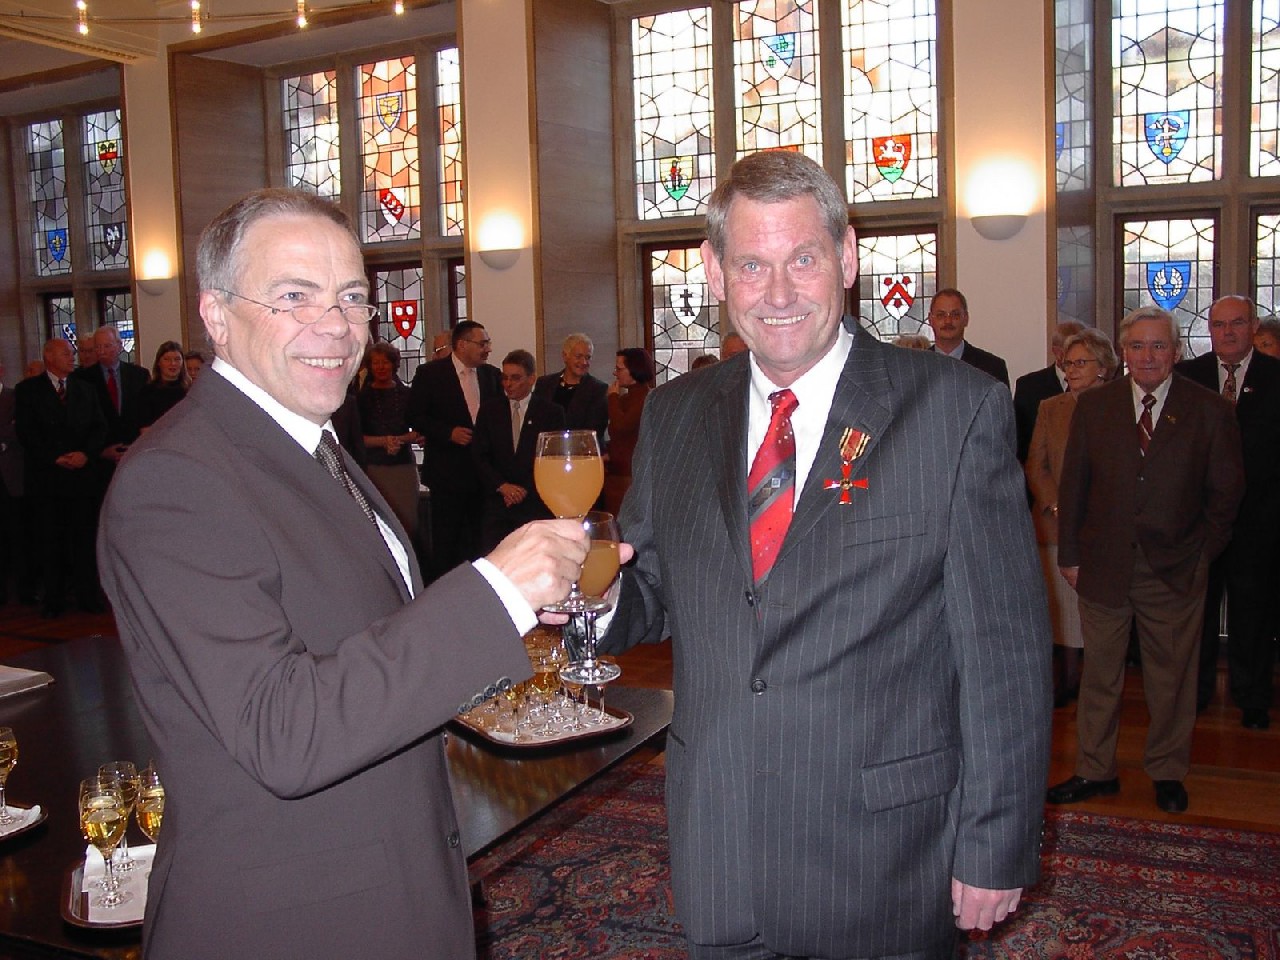 Rückblick in das Jahr 2003: Bundesverdienstkreuz an Norbert Reisener!